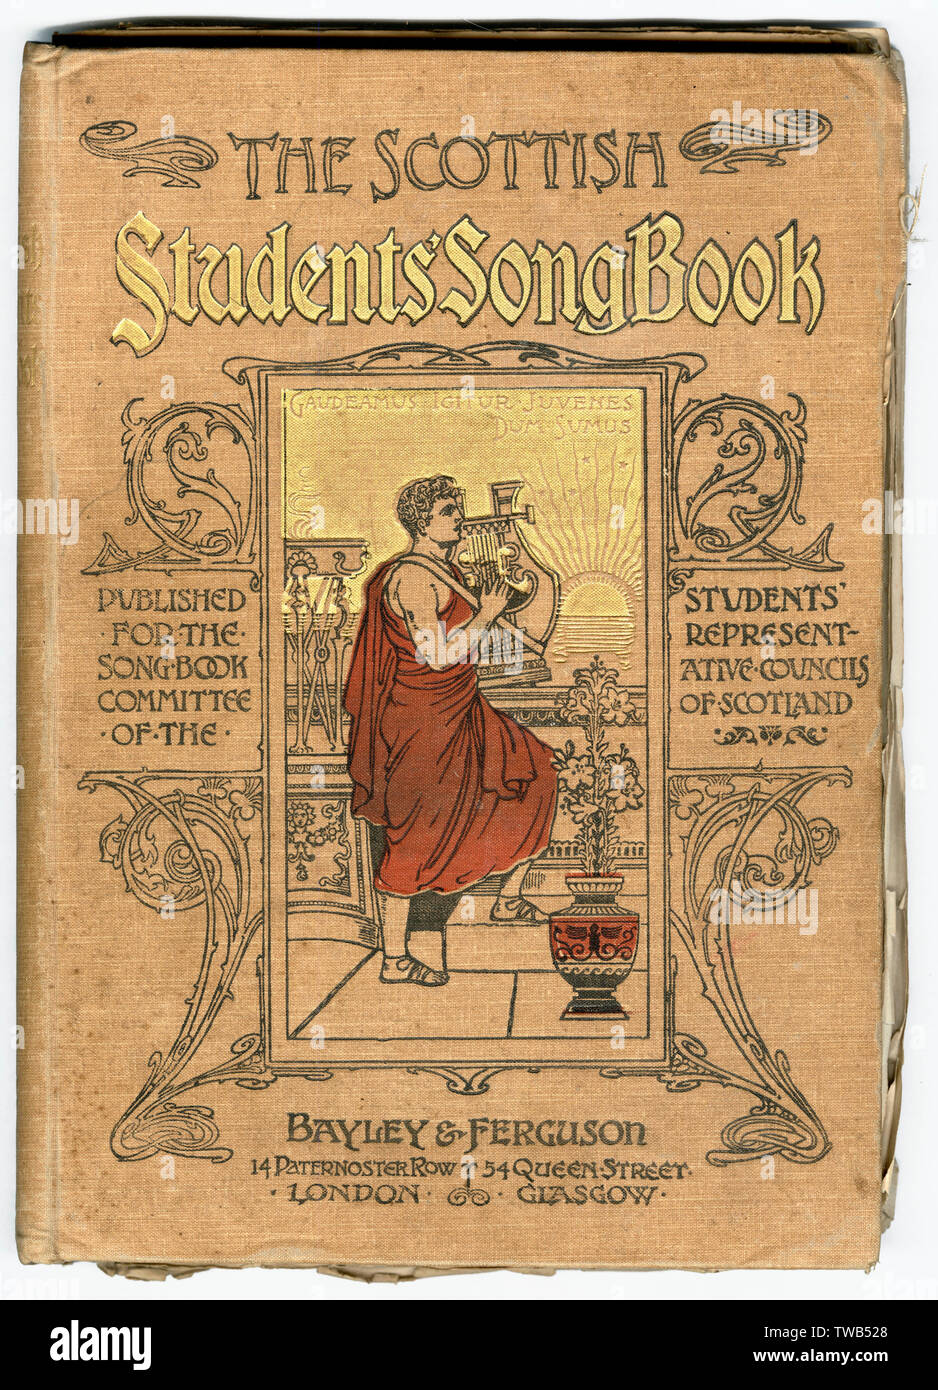 Couverture, le livre de chansons des étudiants écossais Banque D'Images